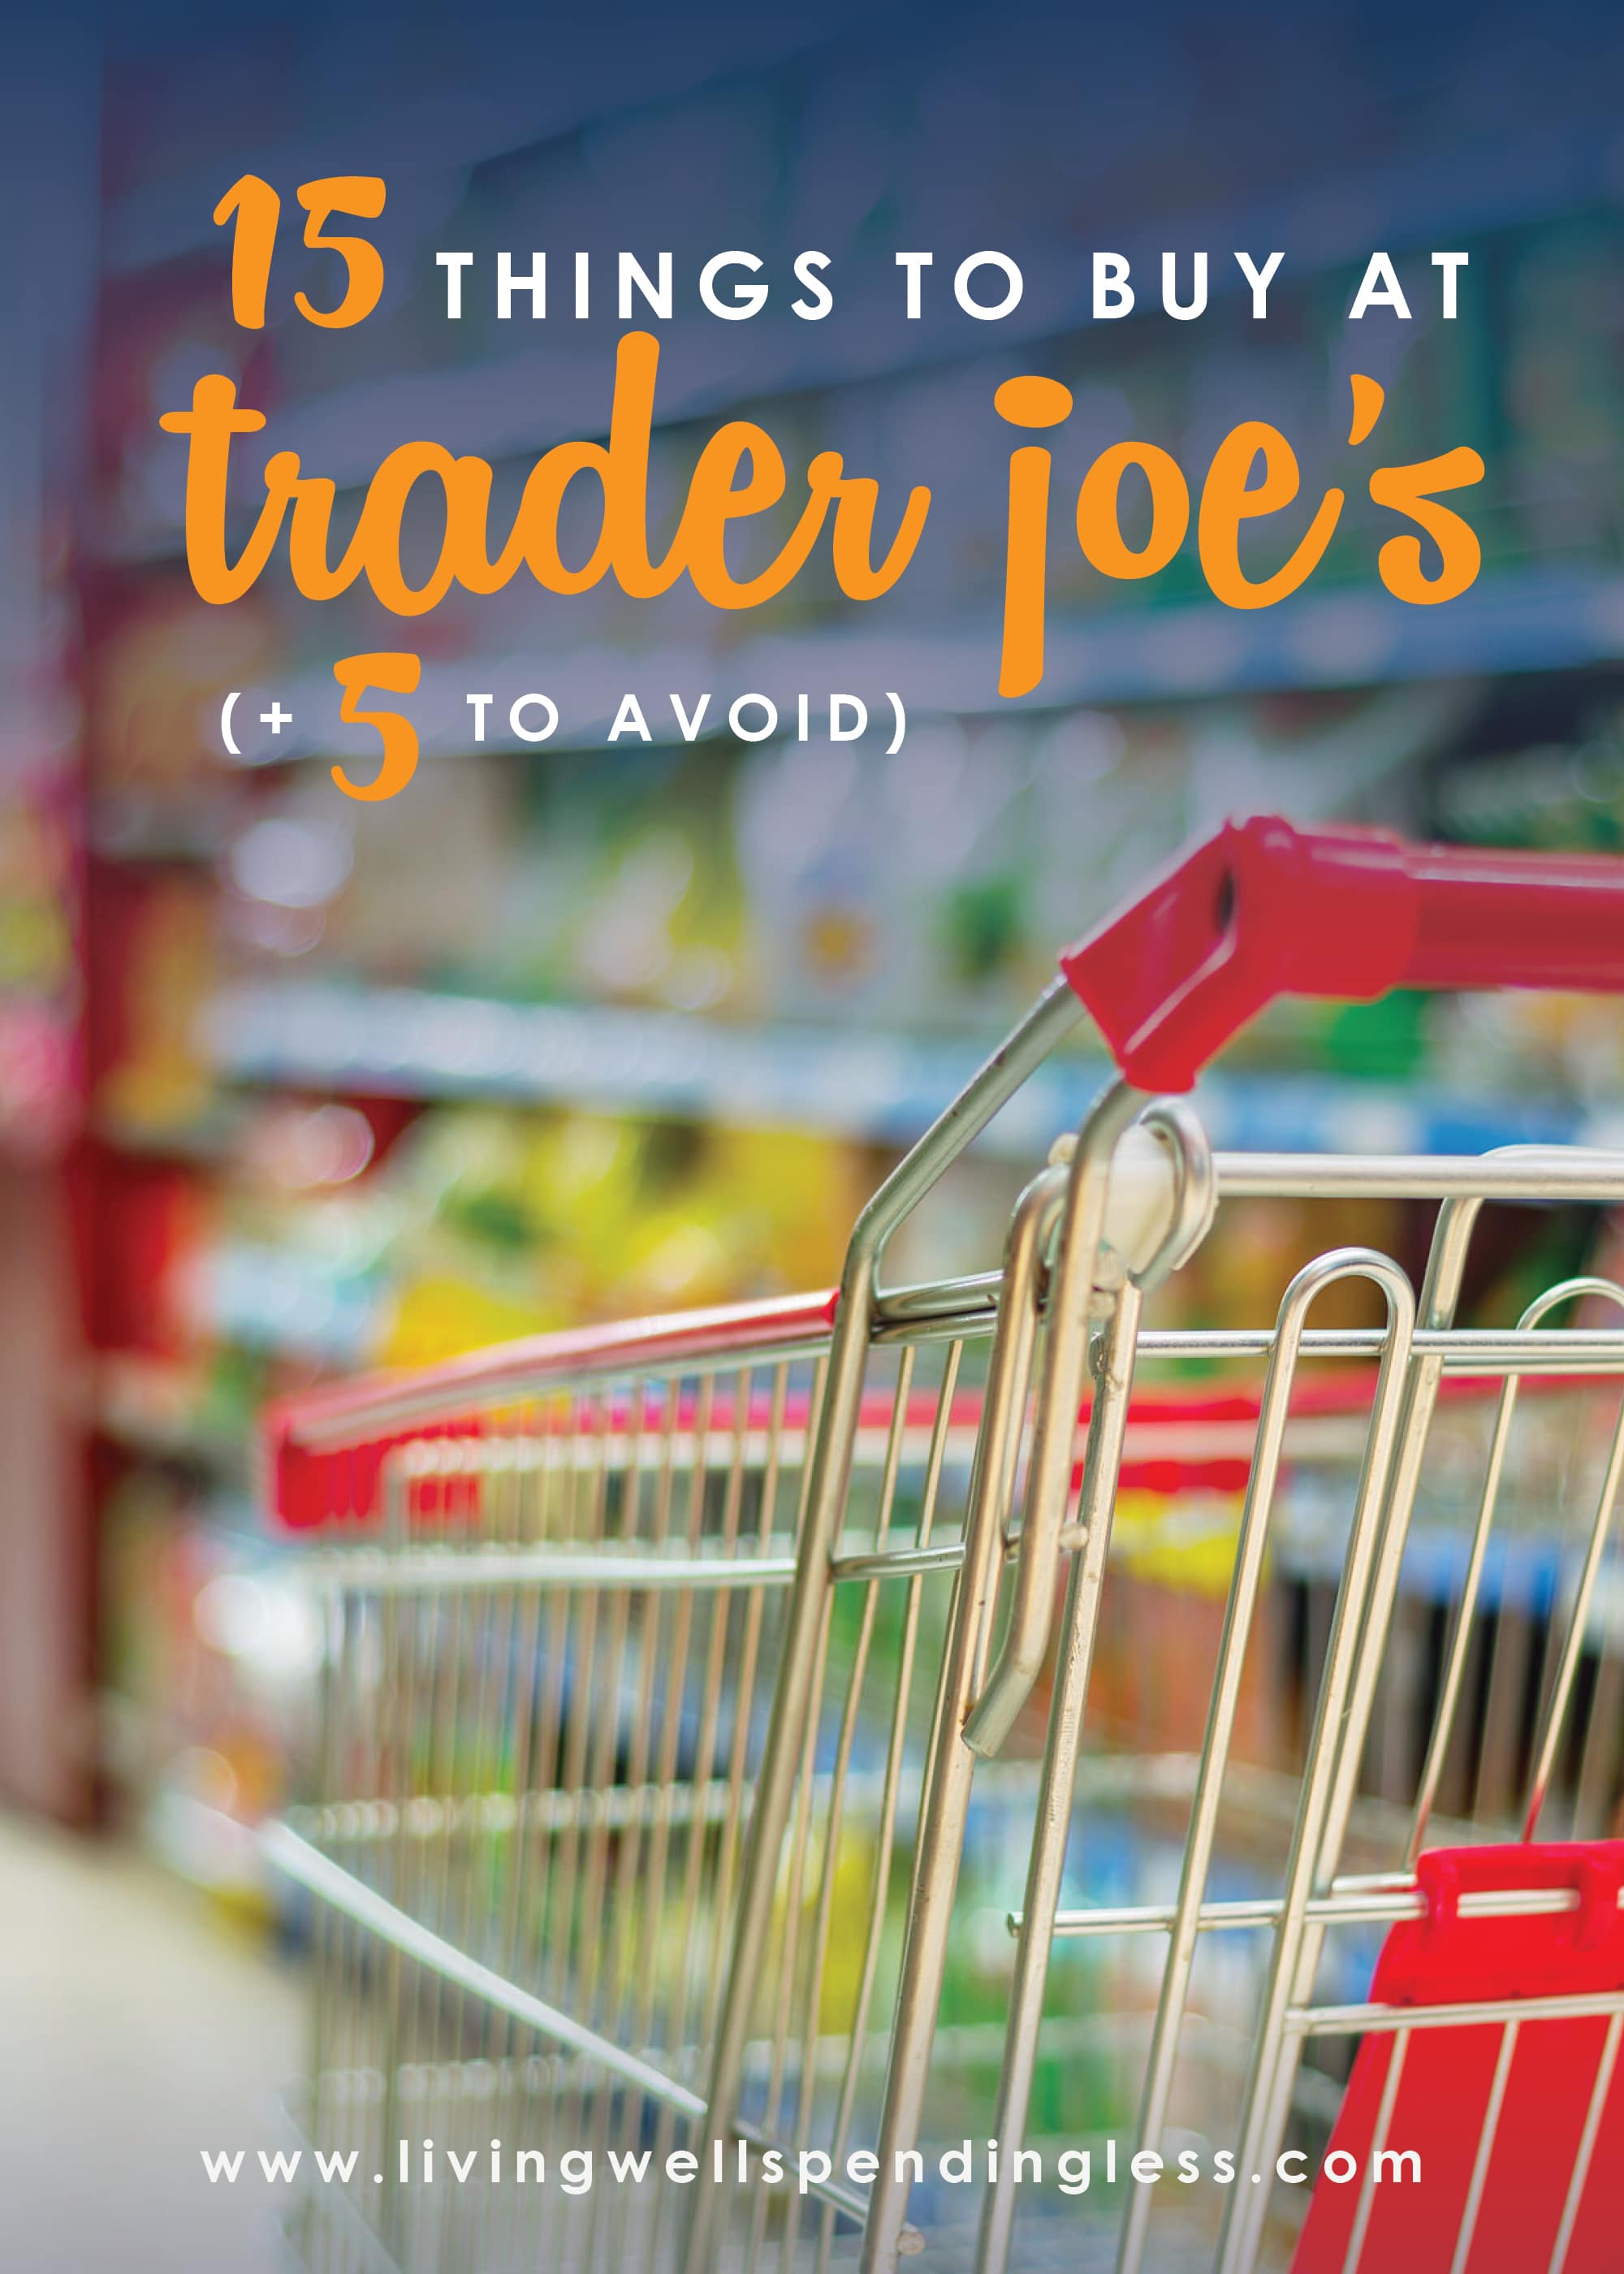 15 Things to Buy at Trader Joe's Best Items at Trader Joe's